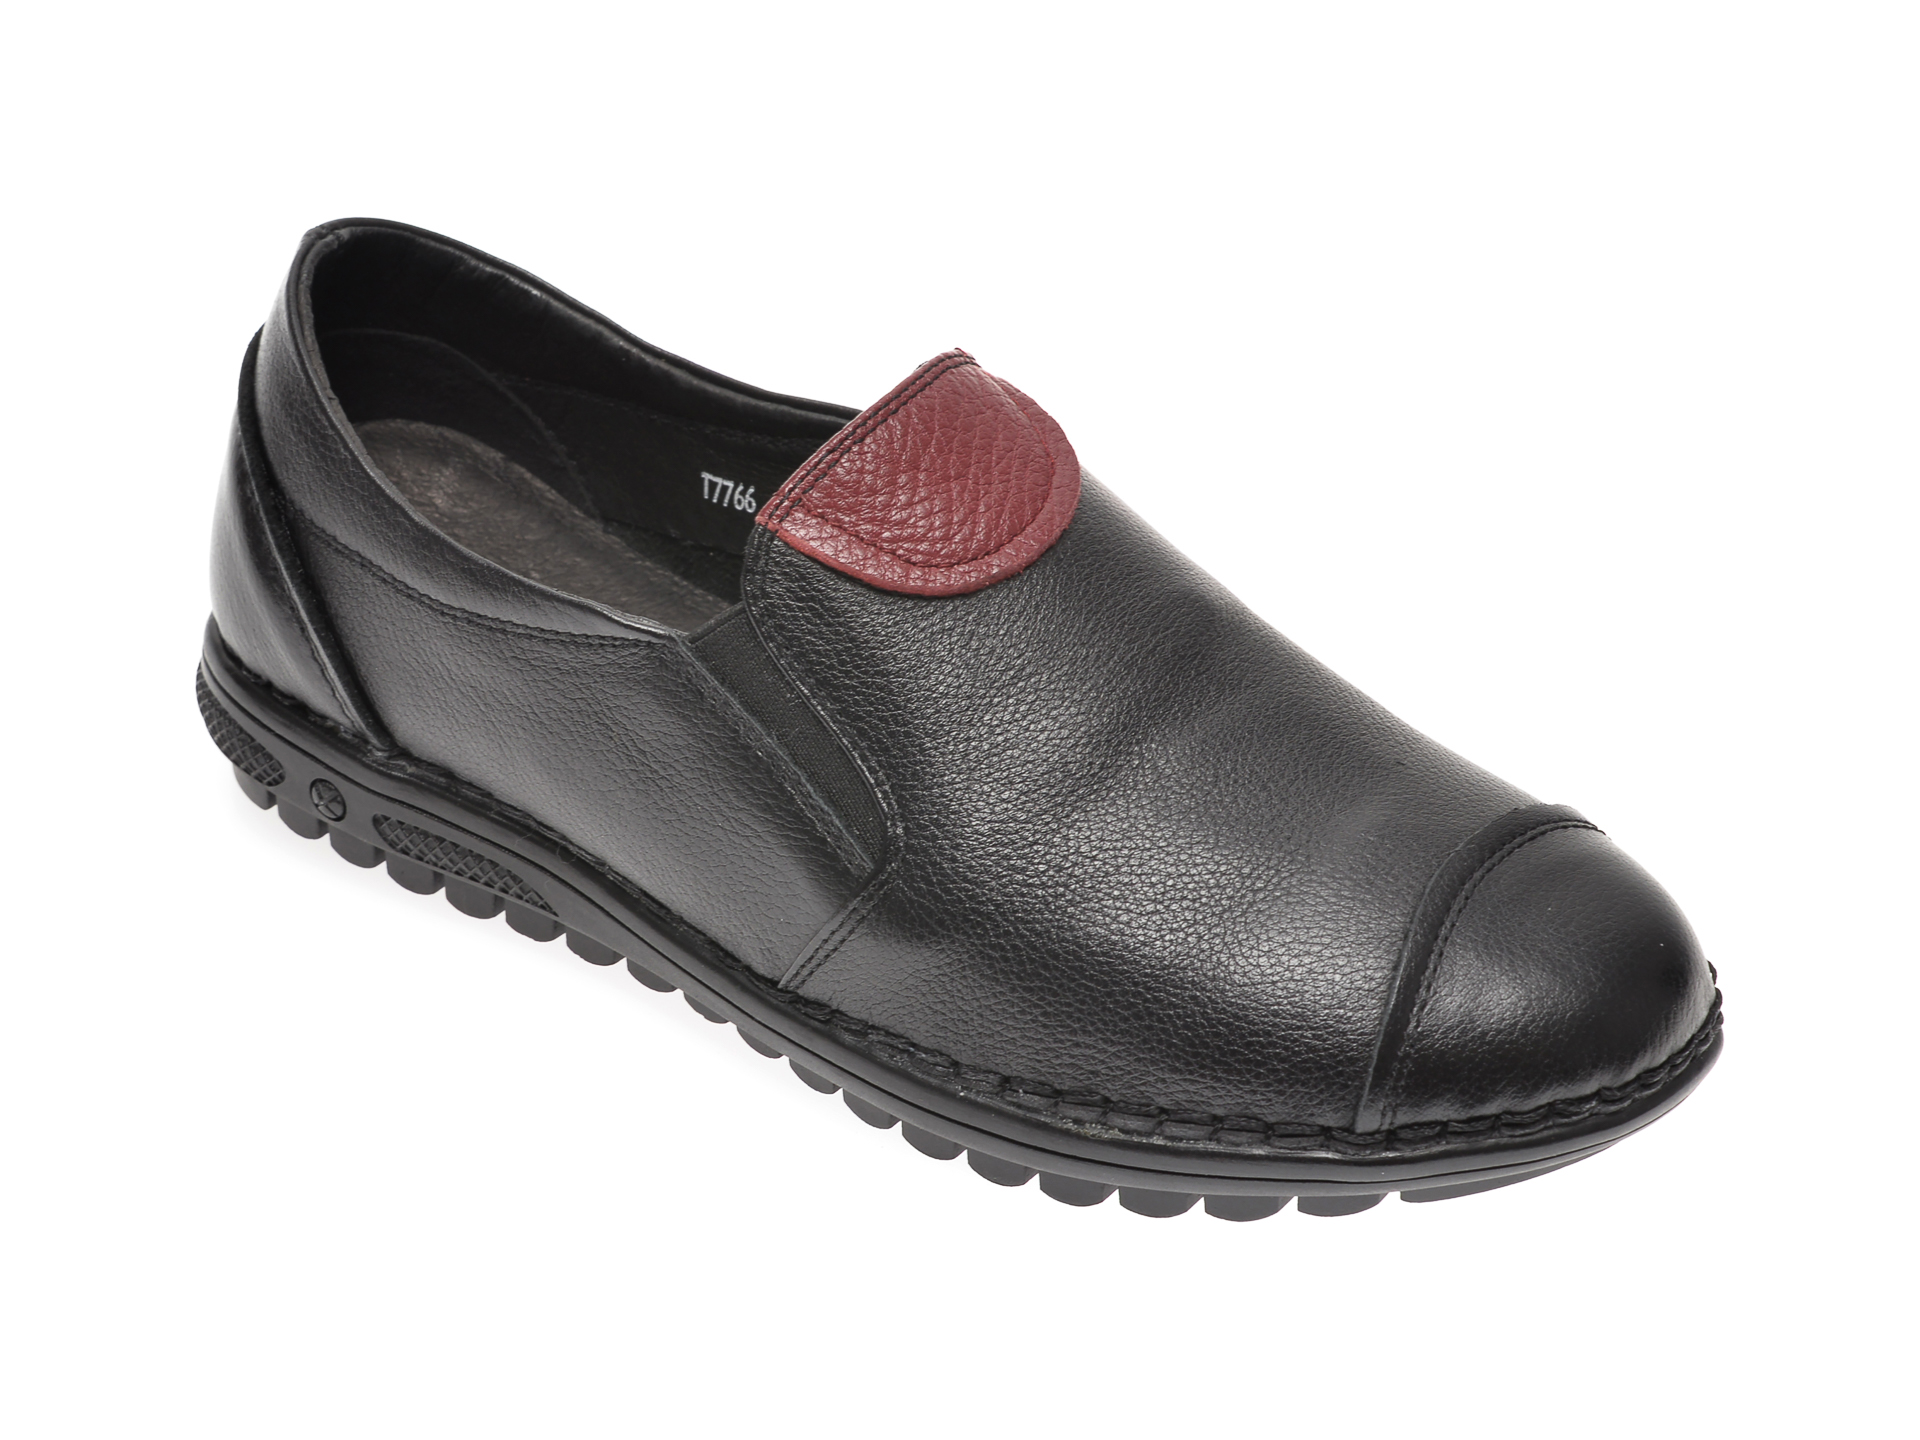 Pantofi PASS COLLECTION negri, T7766, din piele naturala PASS COLLECTION imagine reduceri